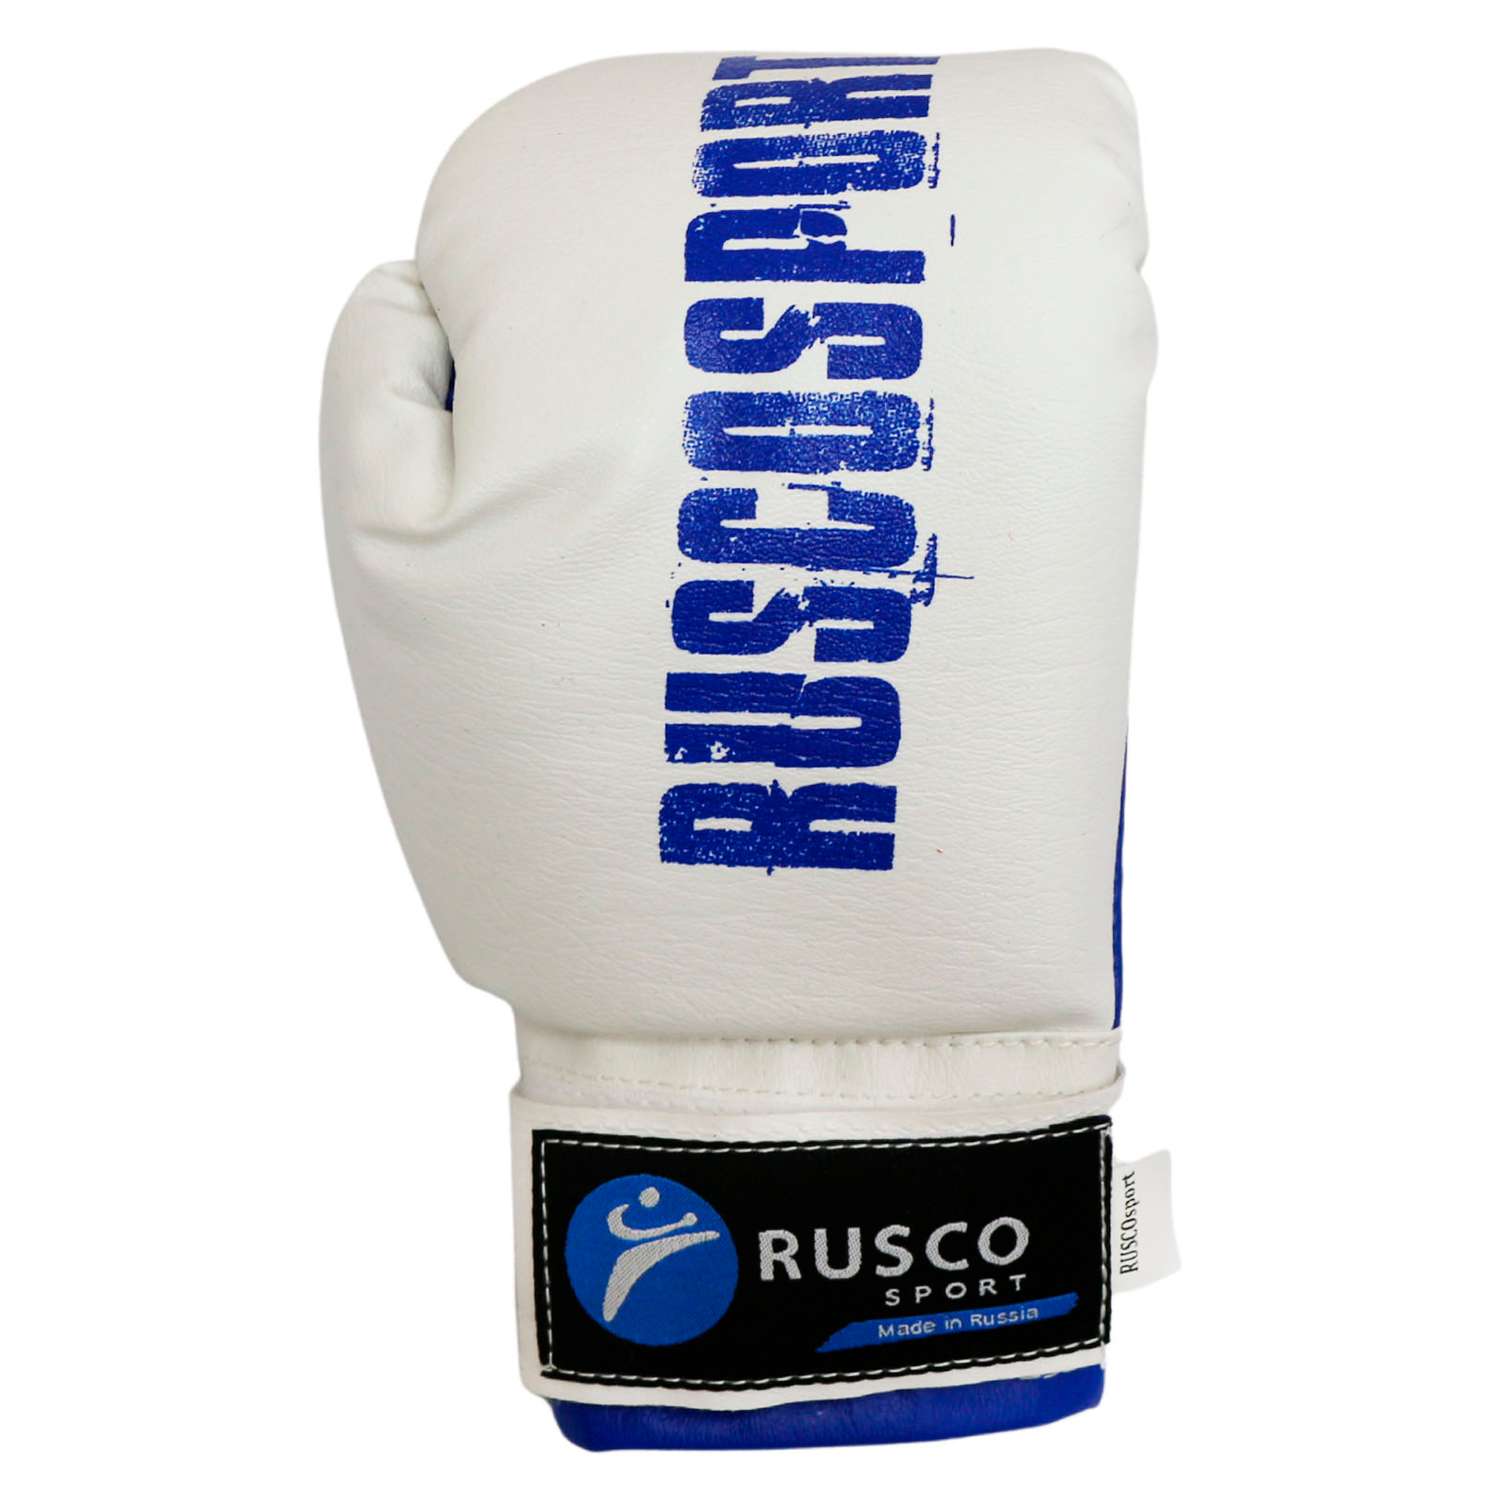 Набор для бокса RuscoSport синий 6OZ триколор - фото 4